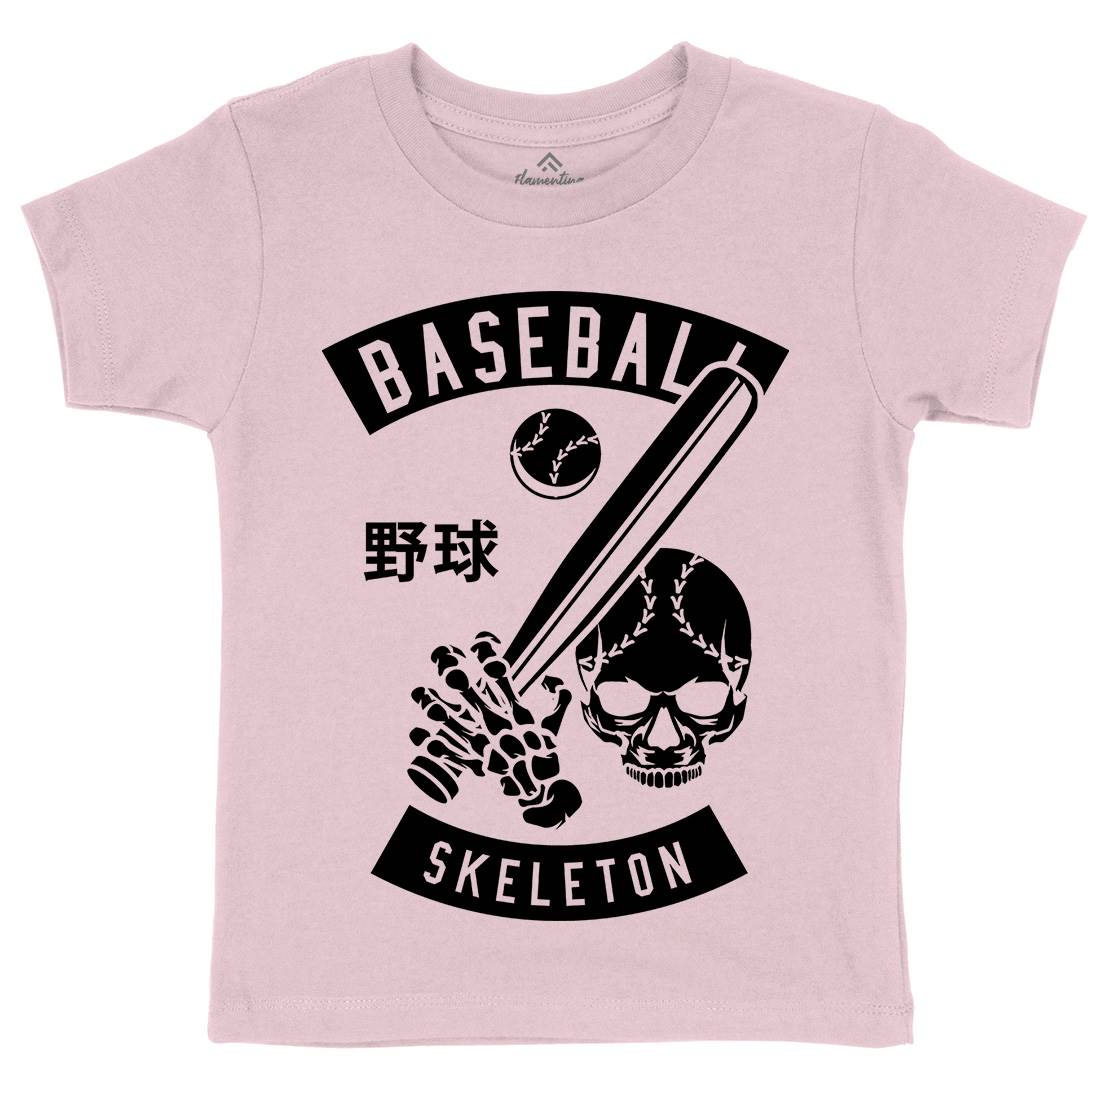 Baseball Skeleton Kids Crew Neck T-Shirt Sport B489